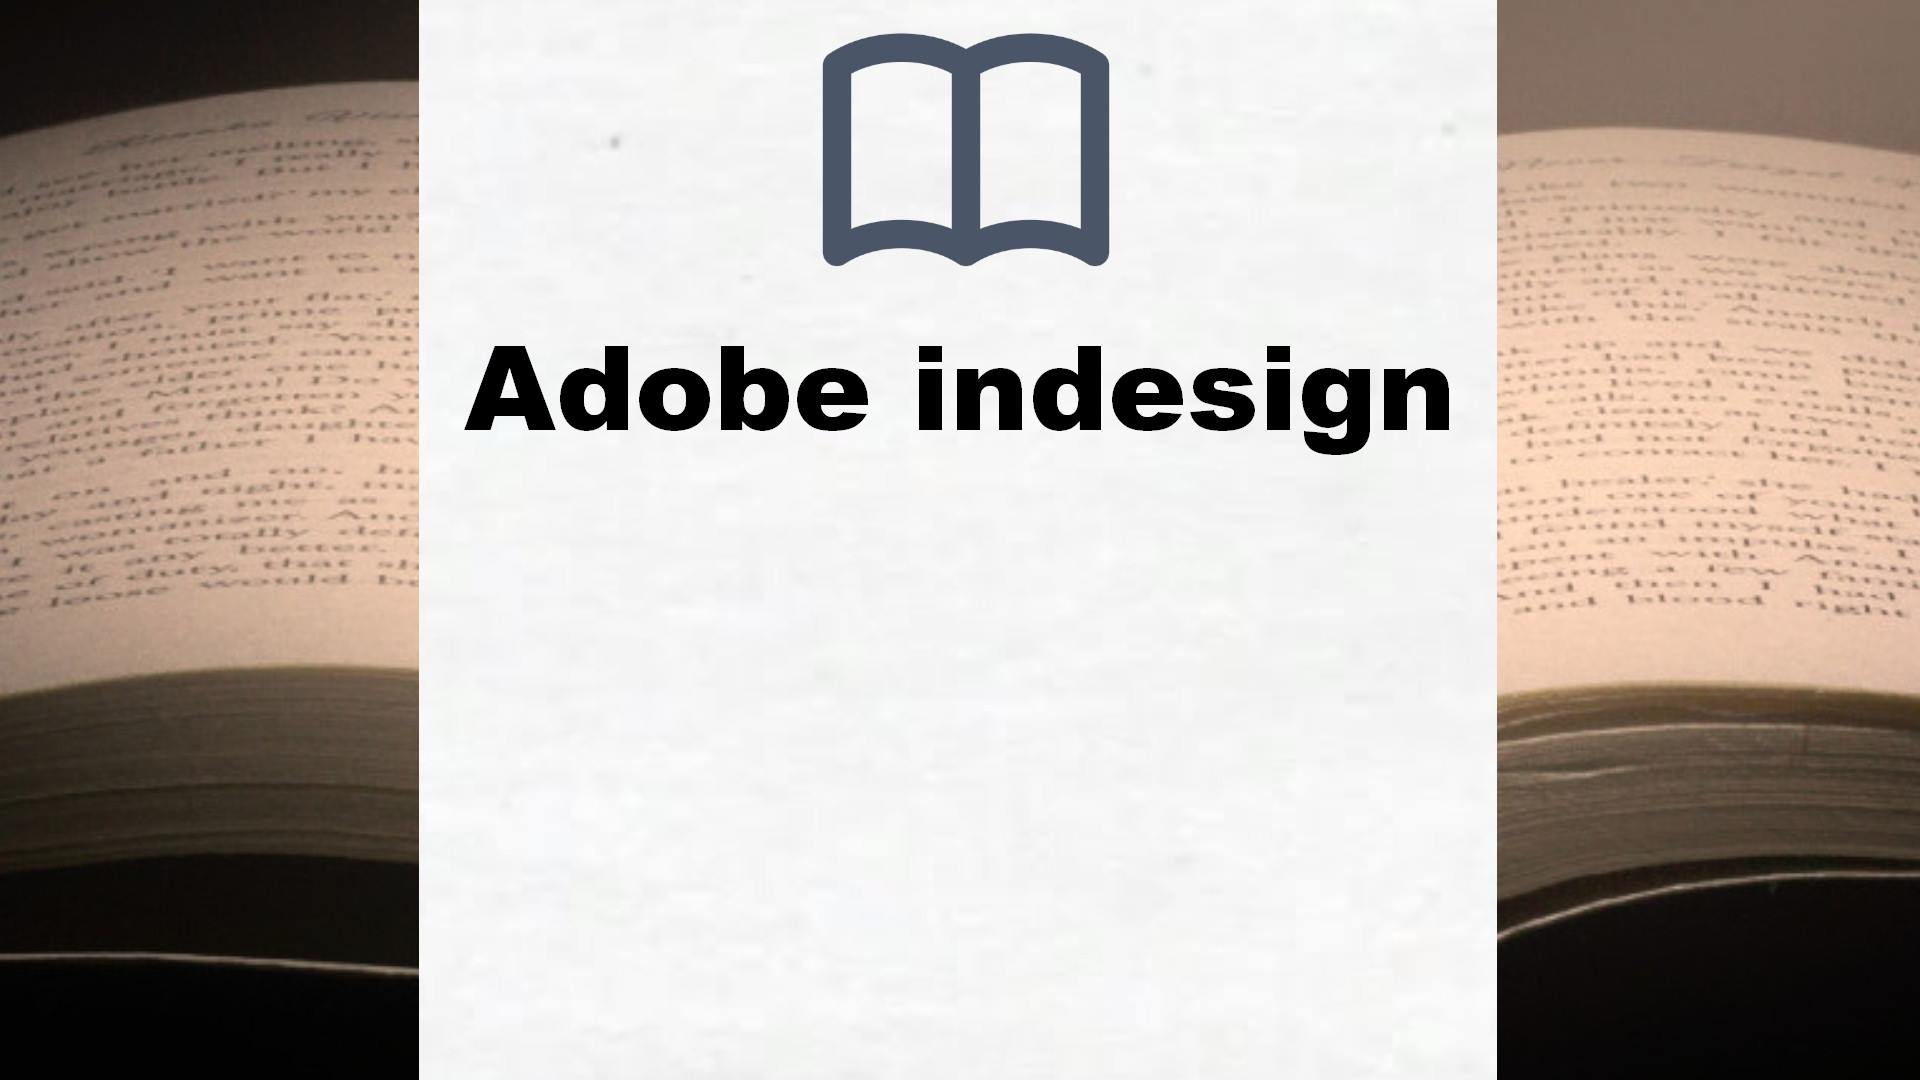 Bücher über Adobe indesign